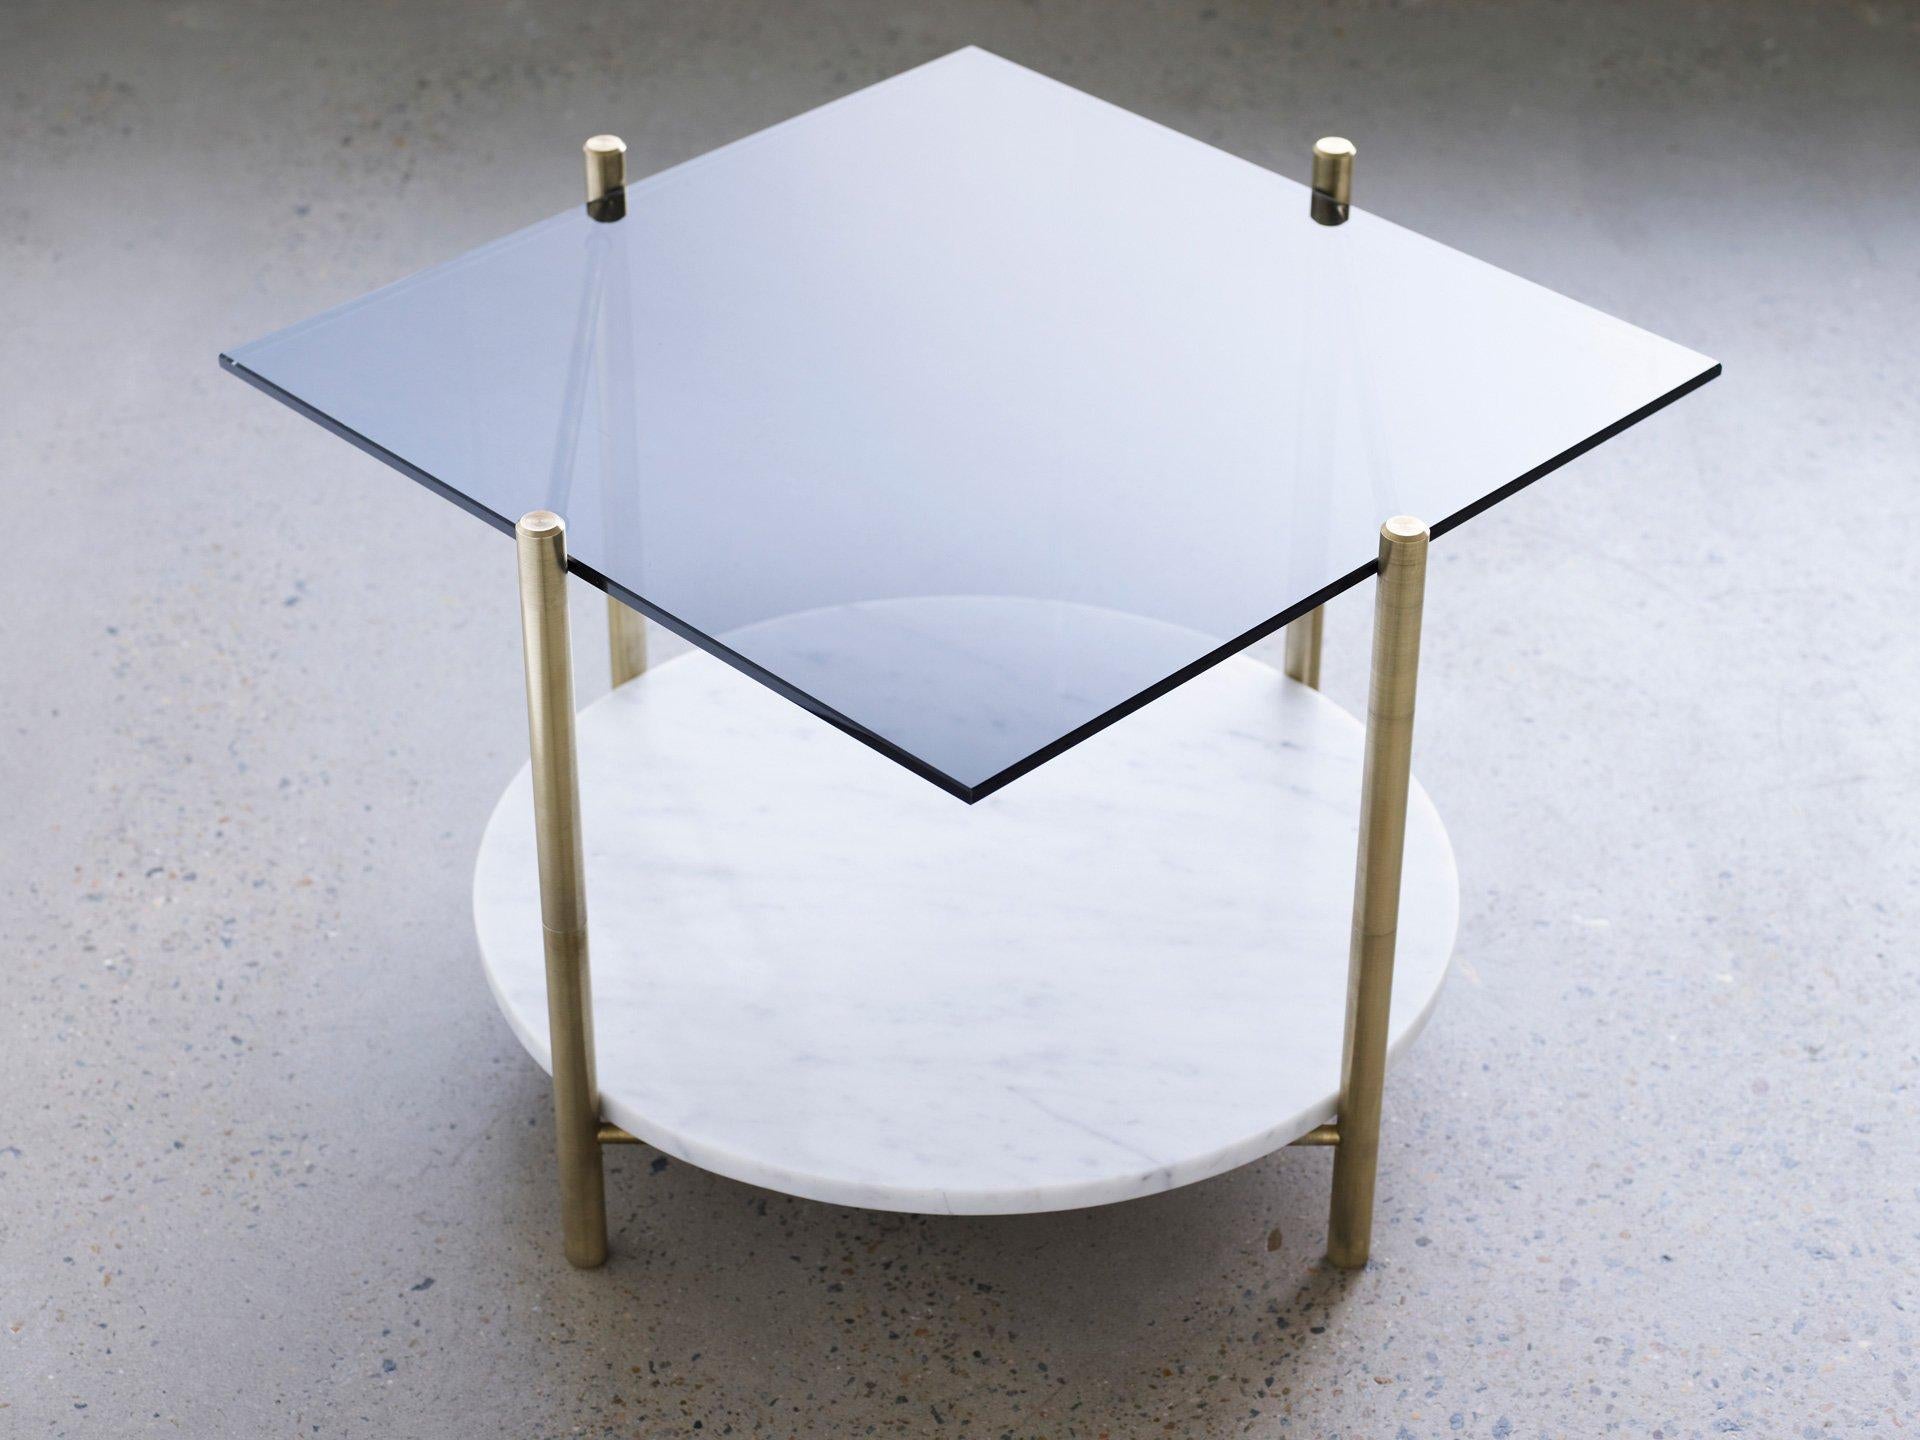 Couchtisch von Henry Wilson
Quadratischer Tisch/runder Tisch

Massiver Messingrahmen mit zwei abgestuften Oberflächen. Alle Tische werden auf Bestellung aus den vom Kunden angegebenen Materialien hergestellt. Einige Möglichkeiten sind